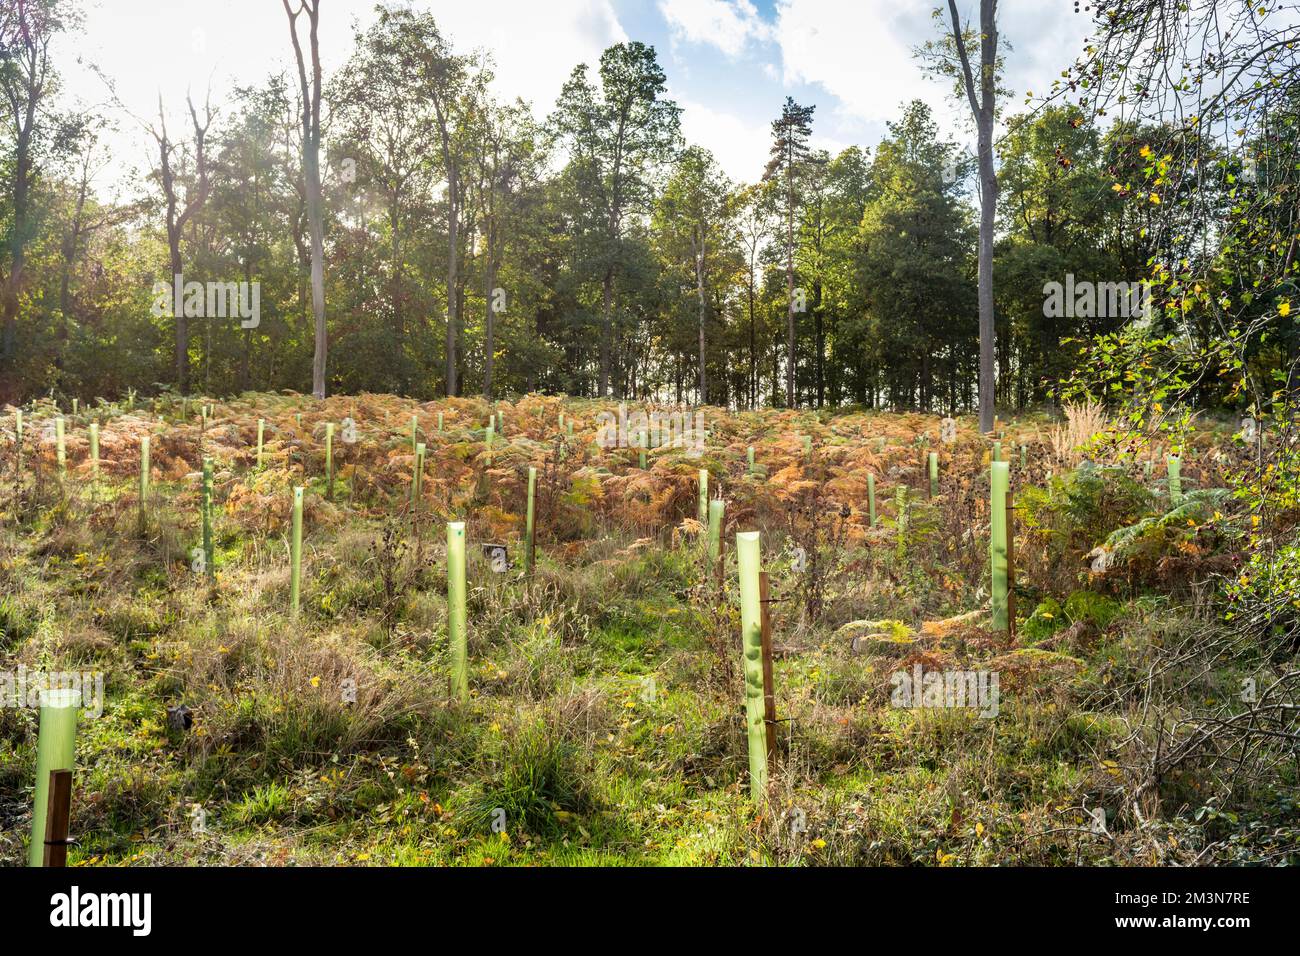 Pflanzen von Bäumen, jungen Sapling Bäumen, die in einer Waldlude oder einem Wald wachsen. Wiederaufforstung und Umwelt, England, Vereinigtes Königreich Stockfoto